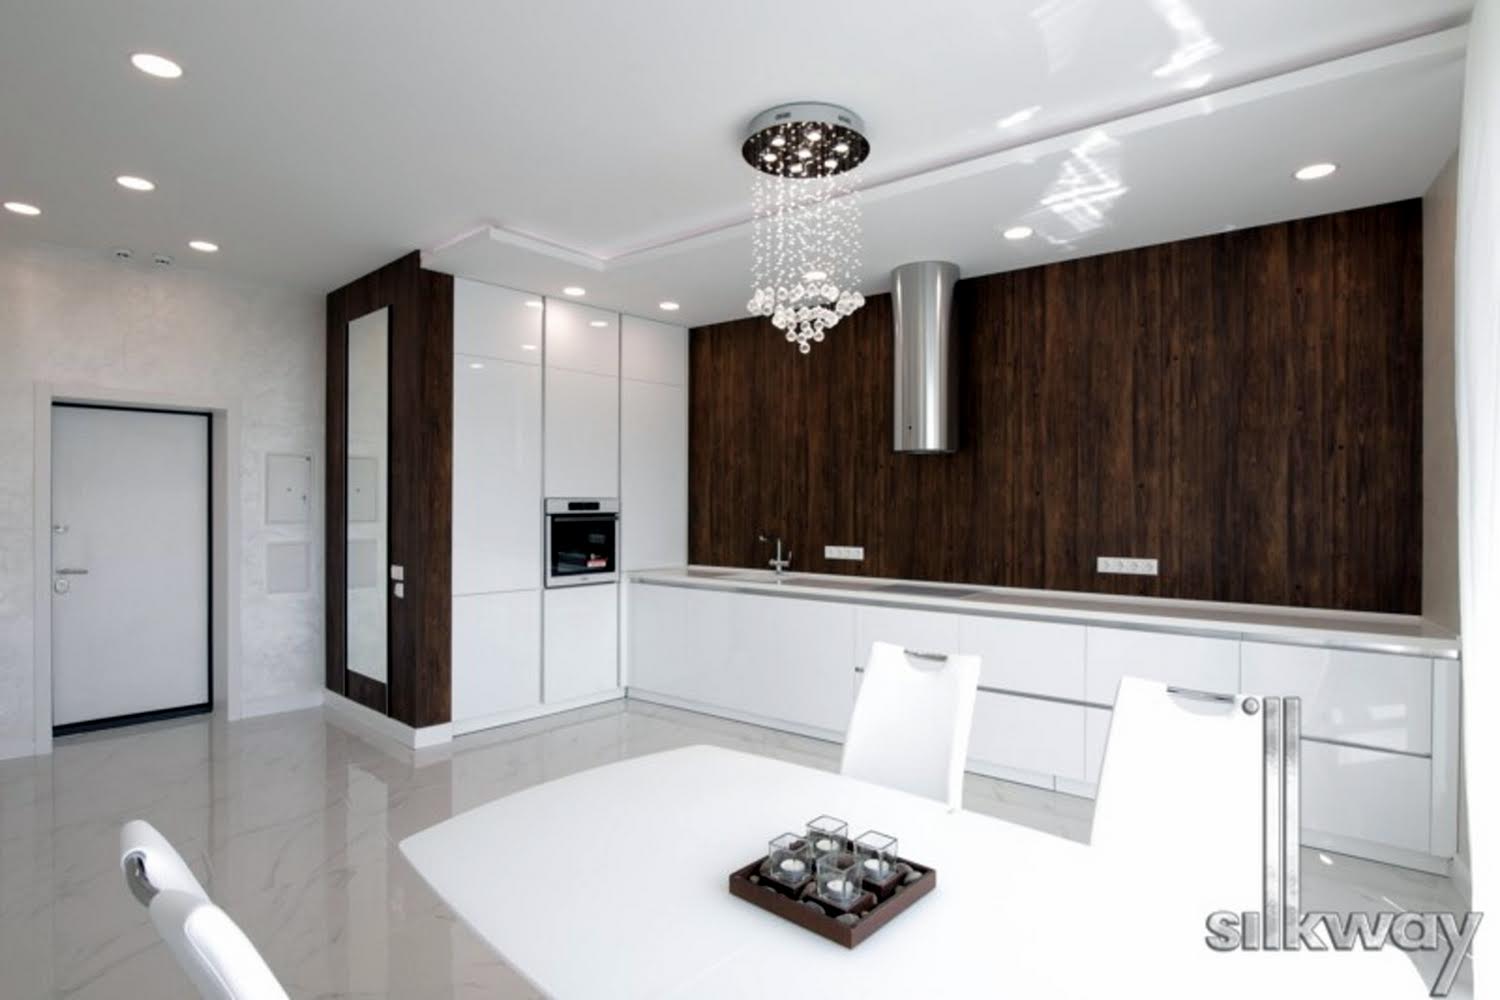 Как выглядят самые дорогие арендные квартиры в Киеве фото 11